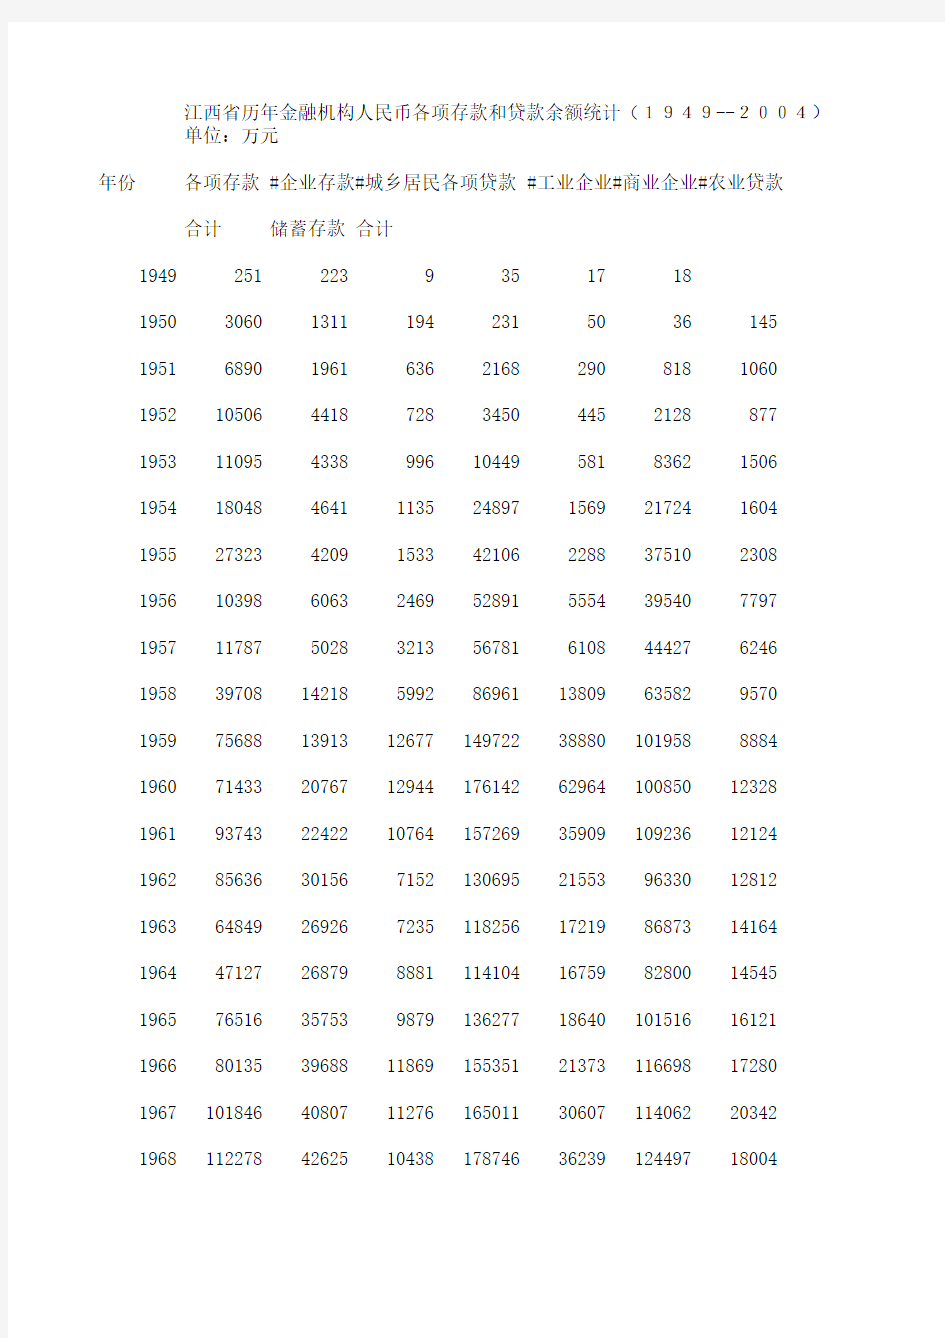 江西省历年金融机构人民币各项存款和贷款余额统计(1949--2004)